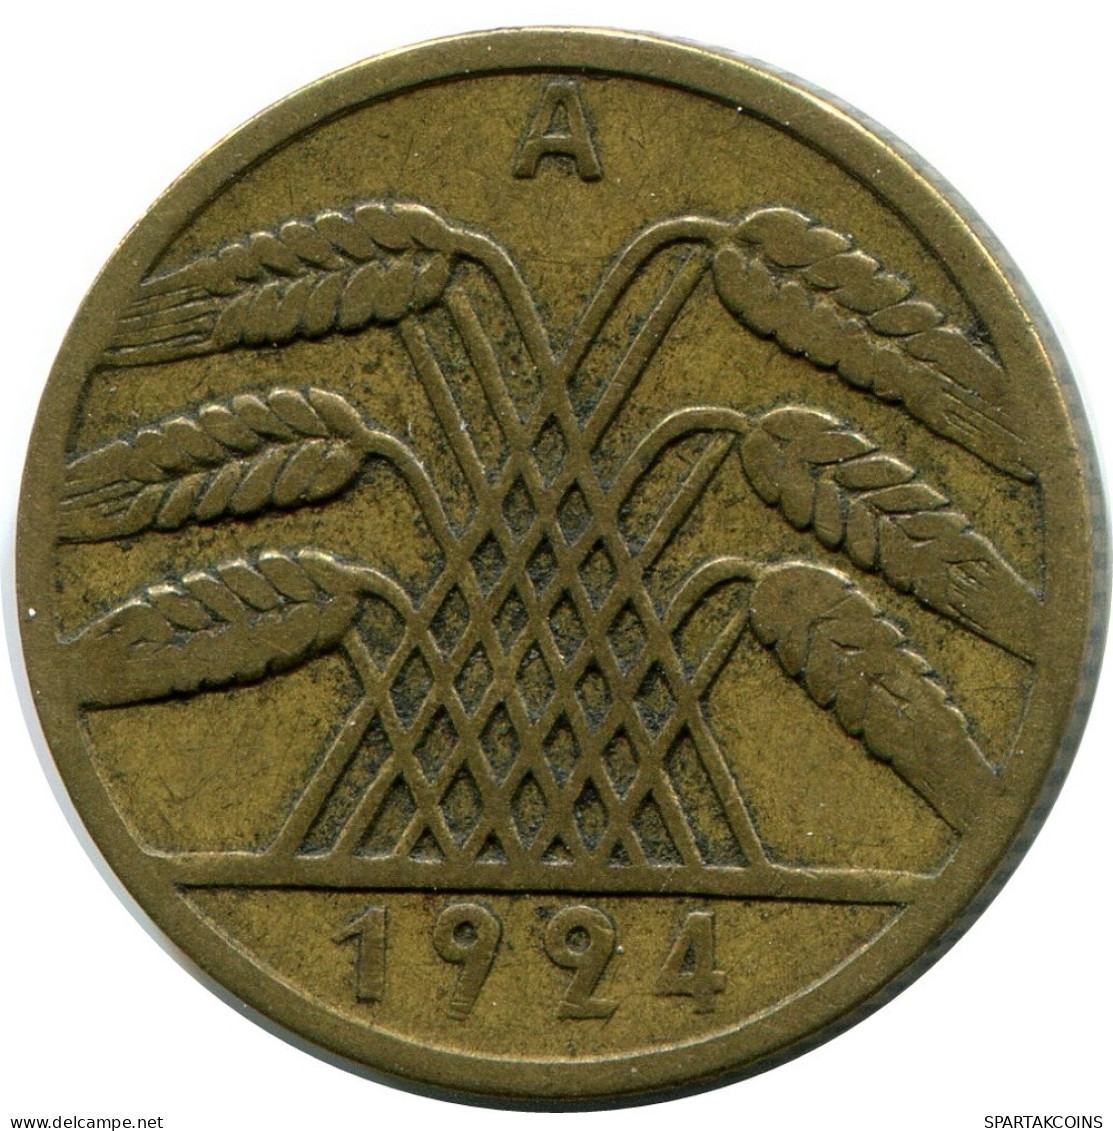 10 RENTENPFENNIG 1924 A DEUTSCHLAND Münze GERMANY #DB931.D.A - 10 Rentenpfennig & 10 Reichspfennig